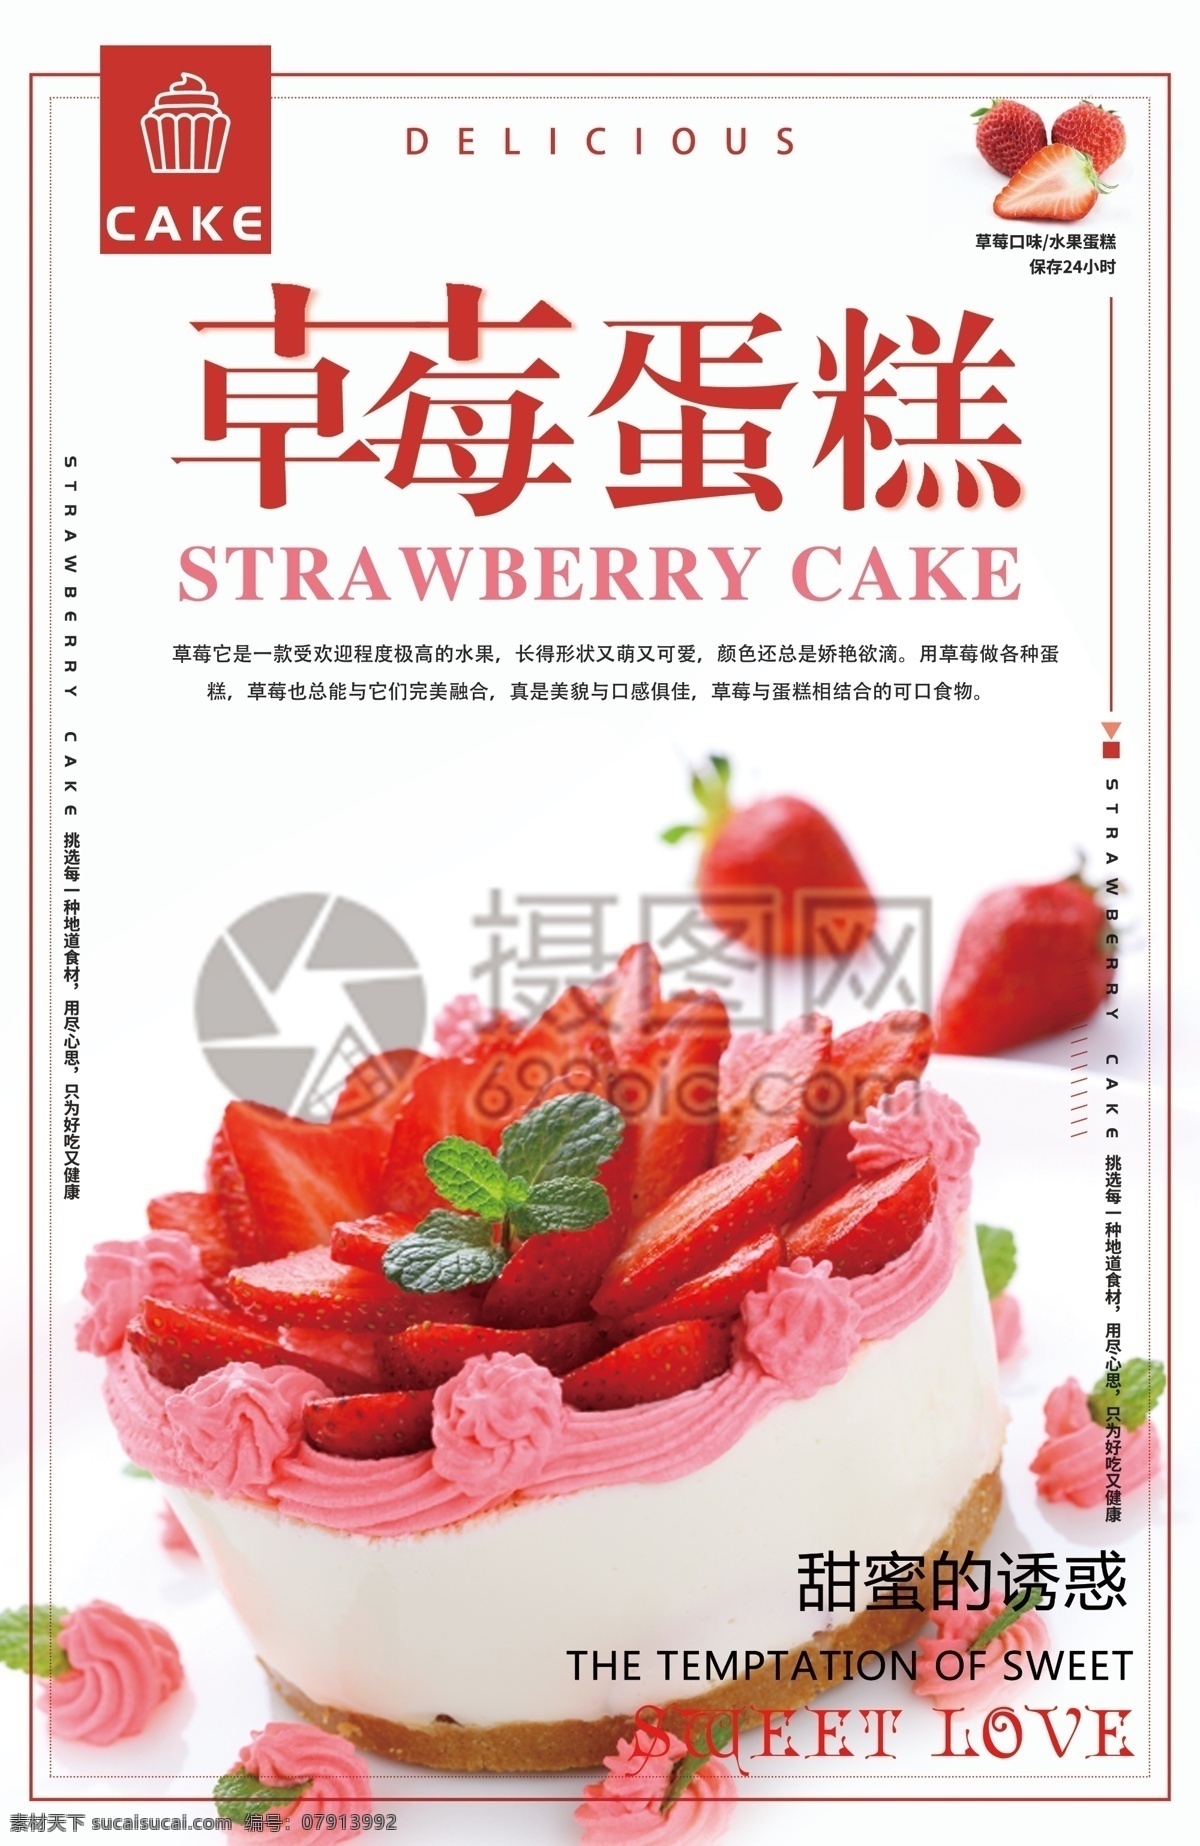 草莓 蛋糕 美食 海报 草莓蛋糕海报 甜品 甜点 烘焙 下午茶 蛋糕定制